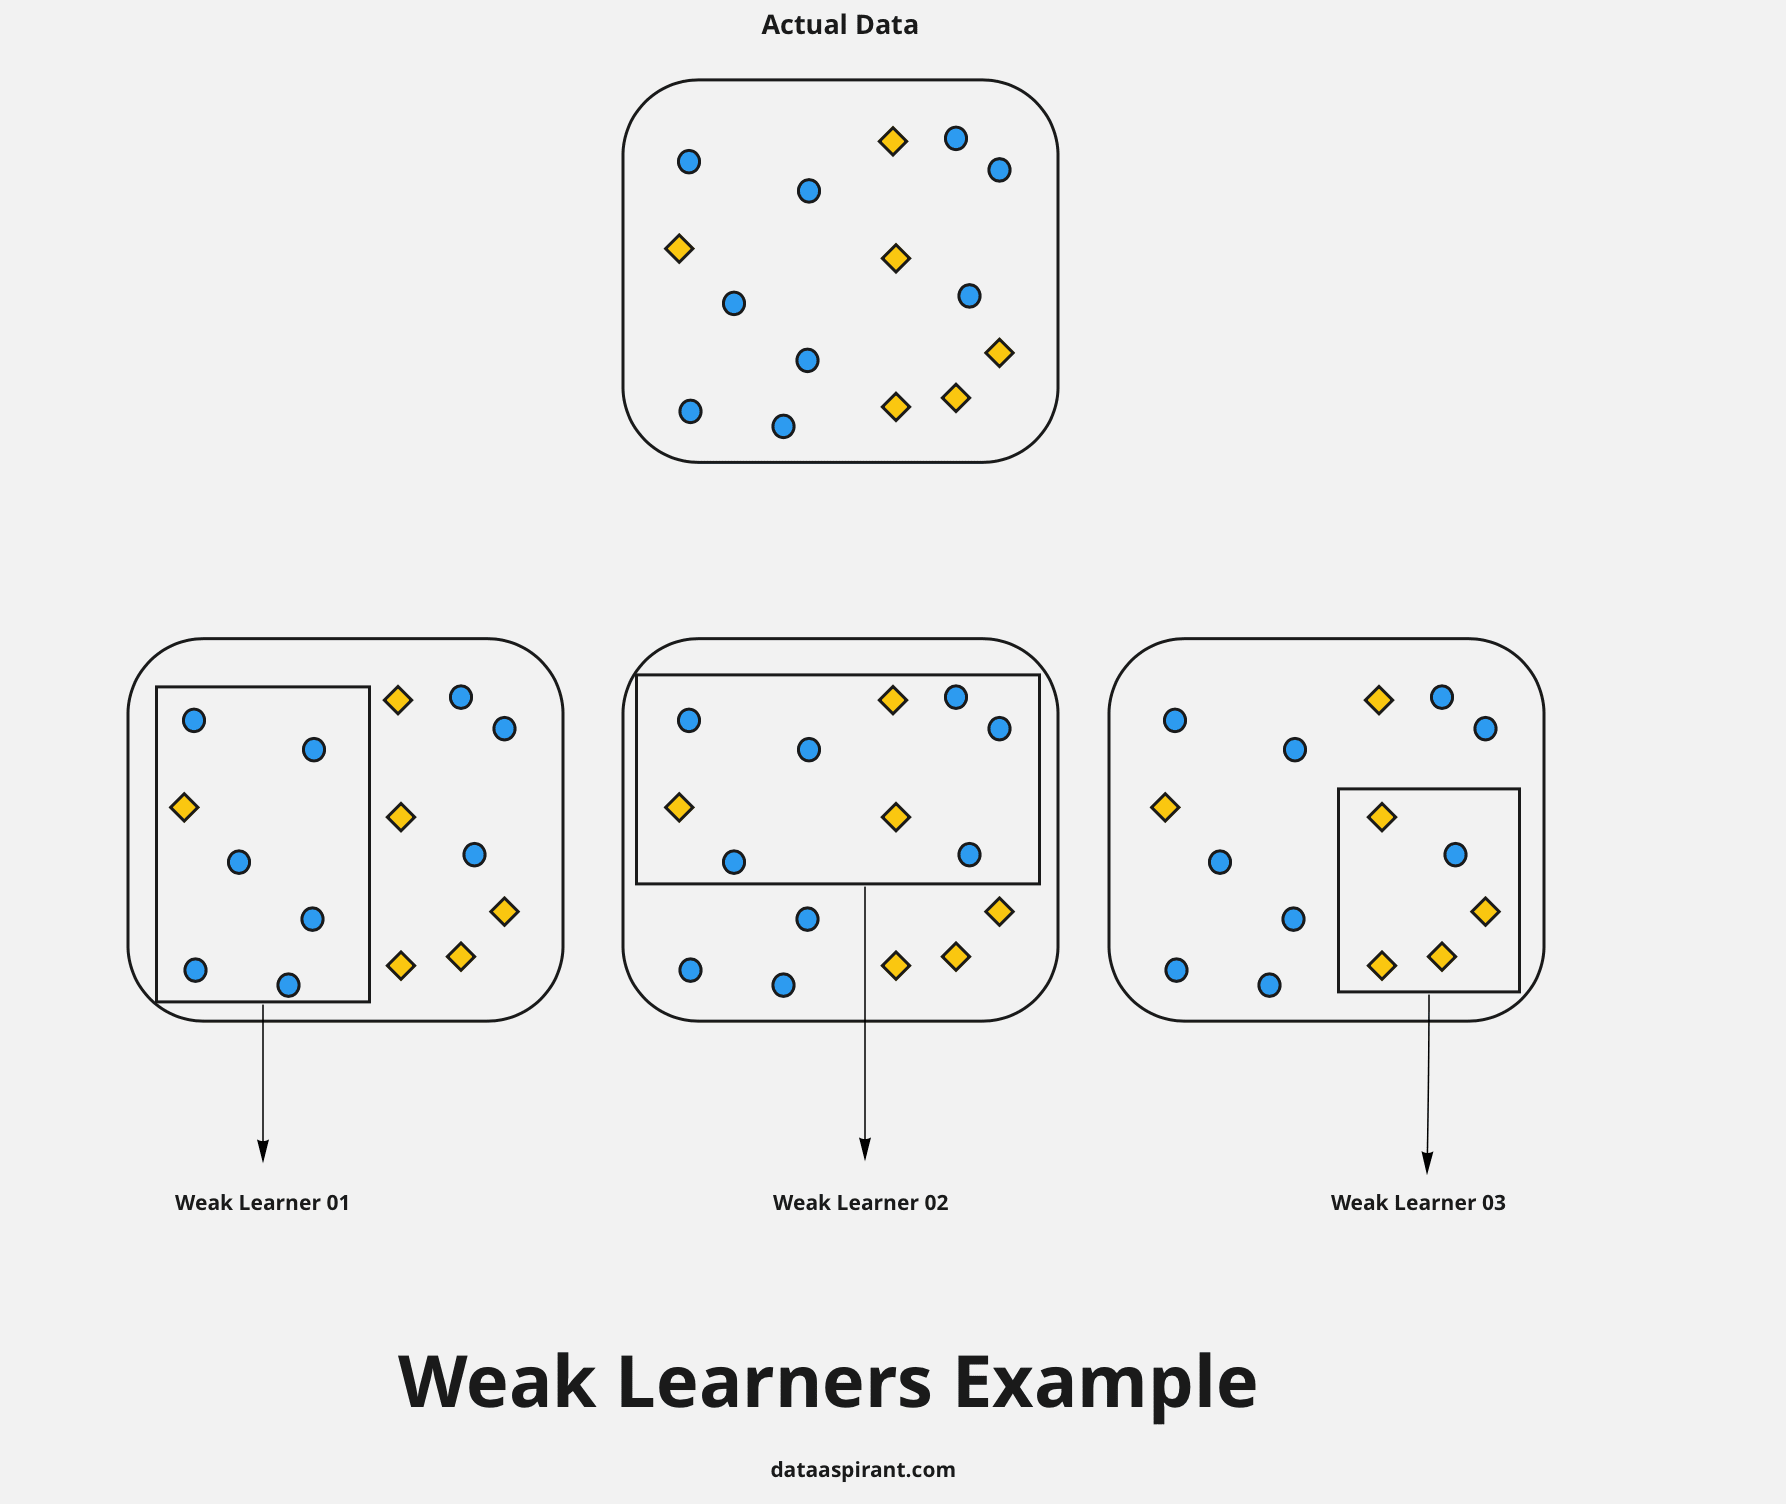 Weak Learners Exmple